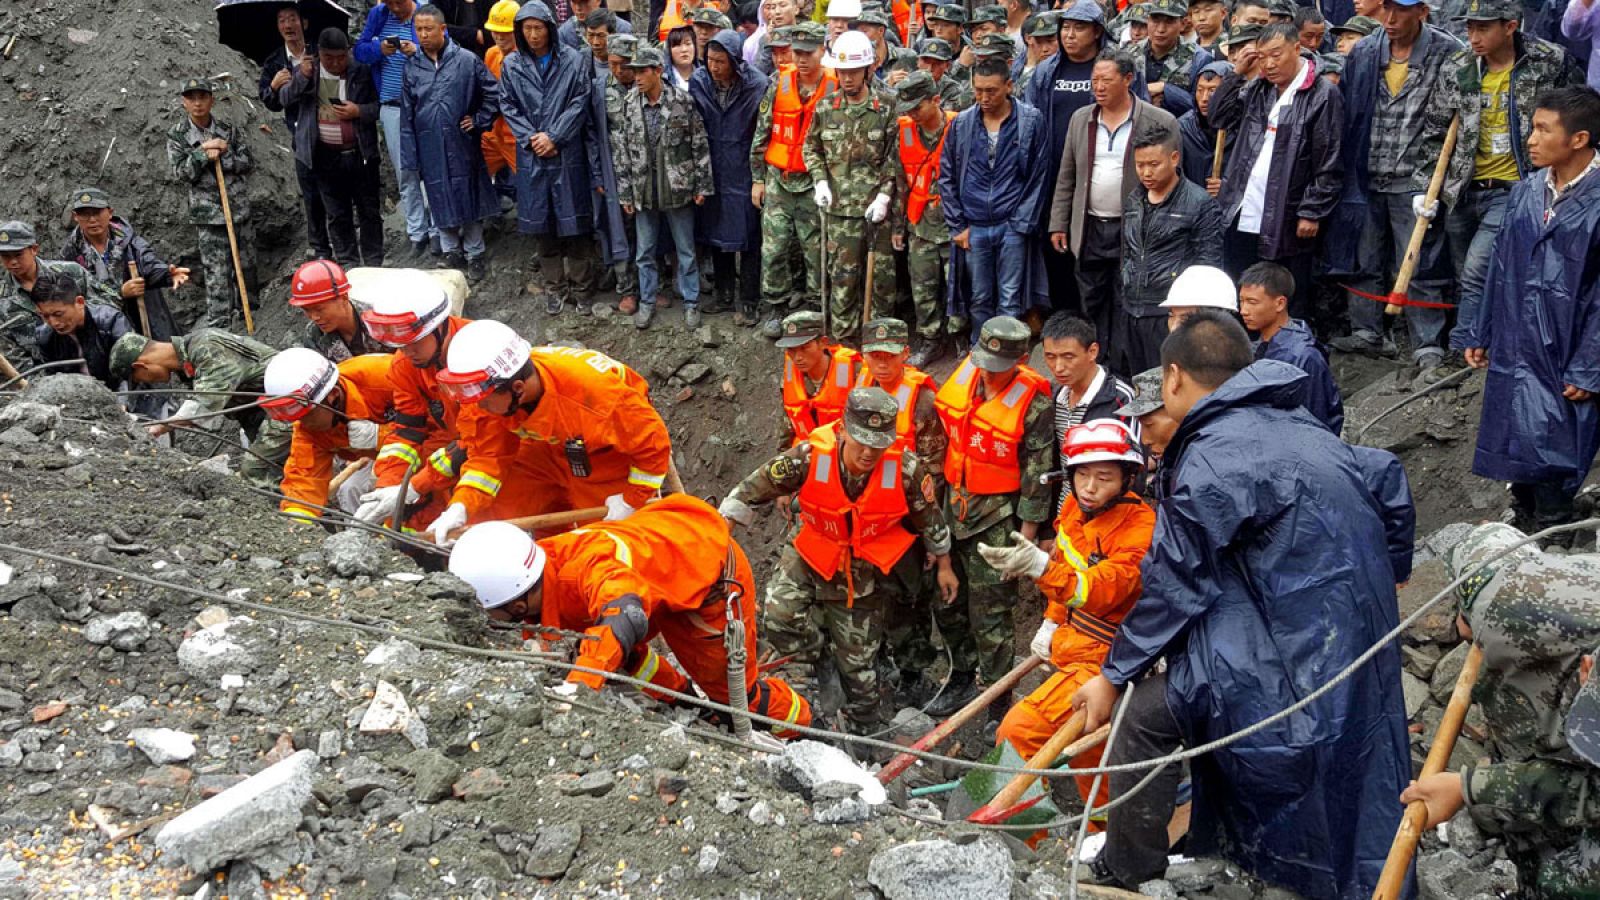 Imagen de varios miembros del equipo de rescate buscando contra reloj a los posibles supervivientes.